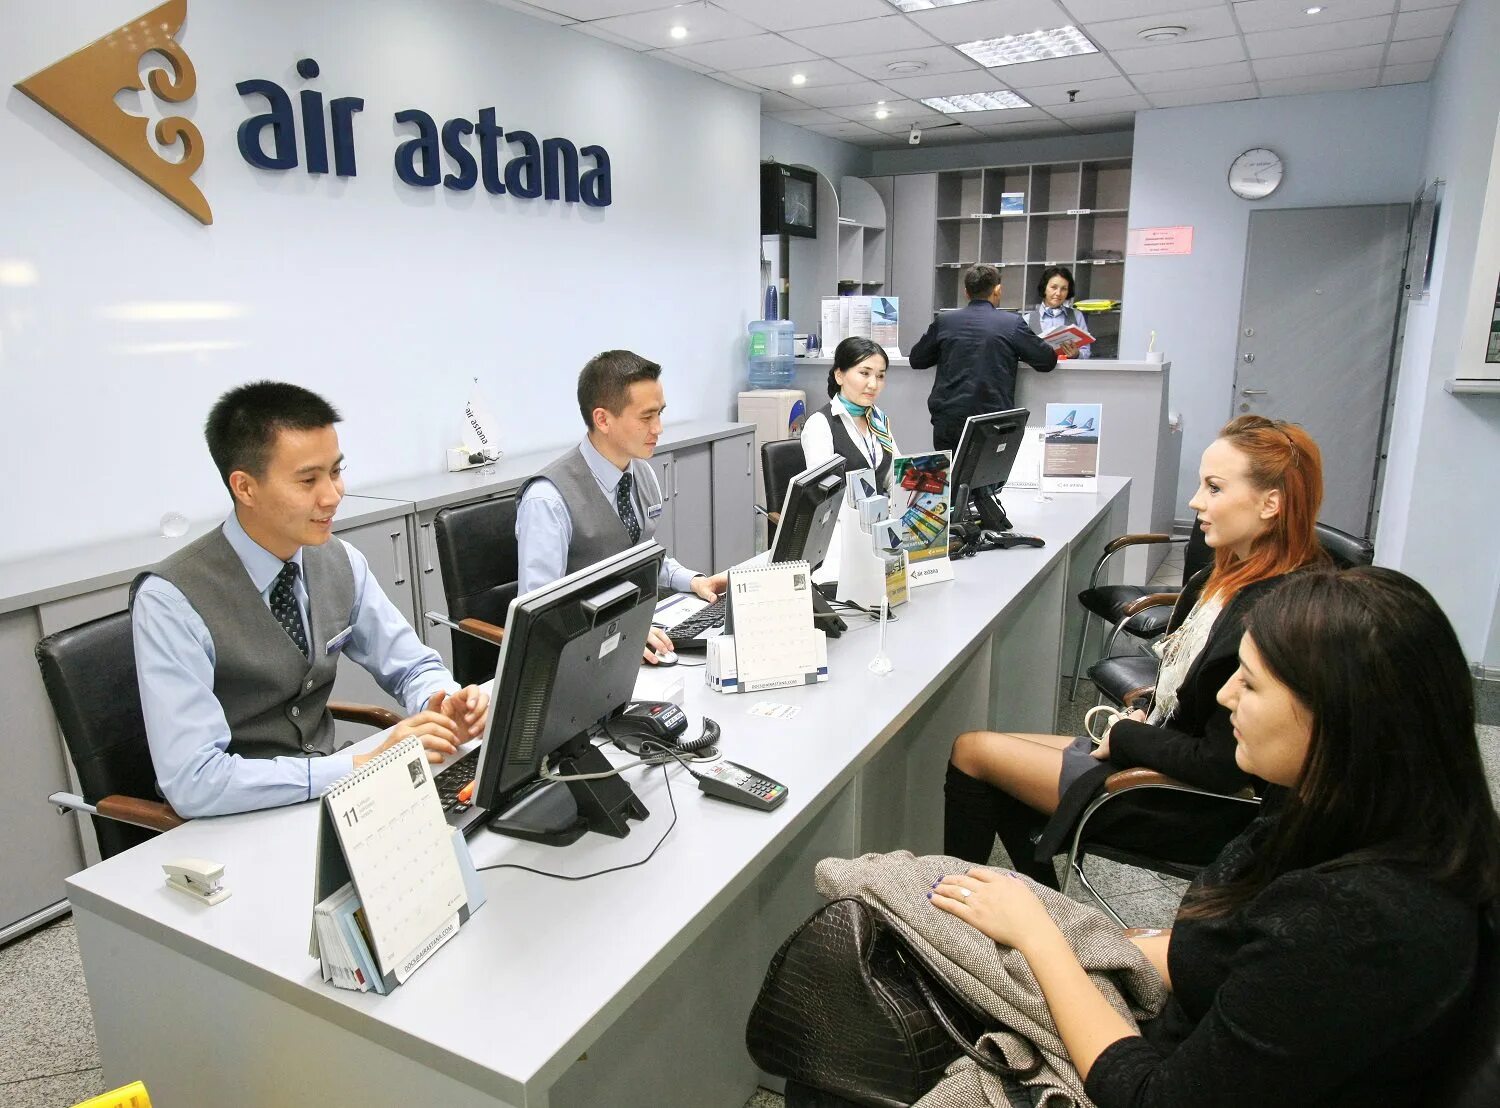 Воздух астана. Эйр Астана. Компания АИР Астана. Air Astana сотрудники. Офис Air Astana здание.